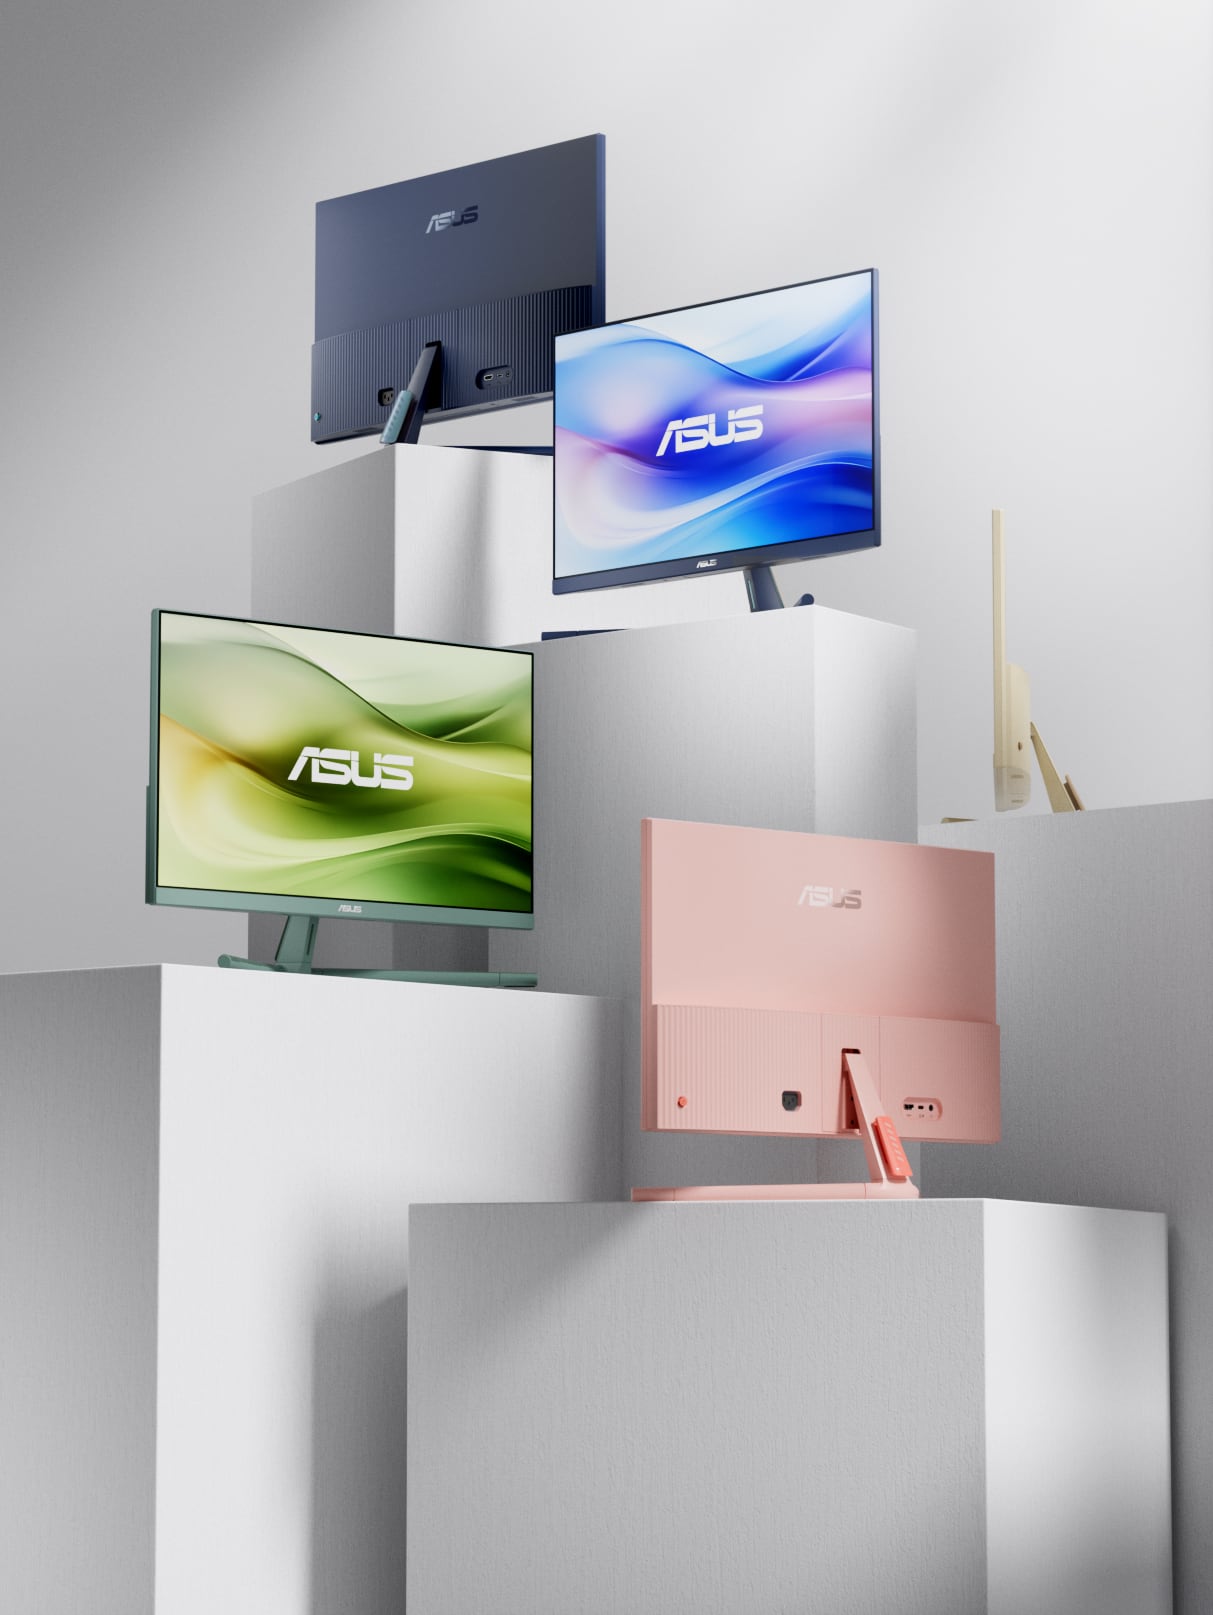 影像顯示 VU 顯示器系列的四種可選用的顏色